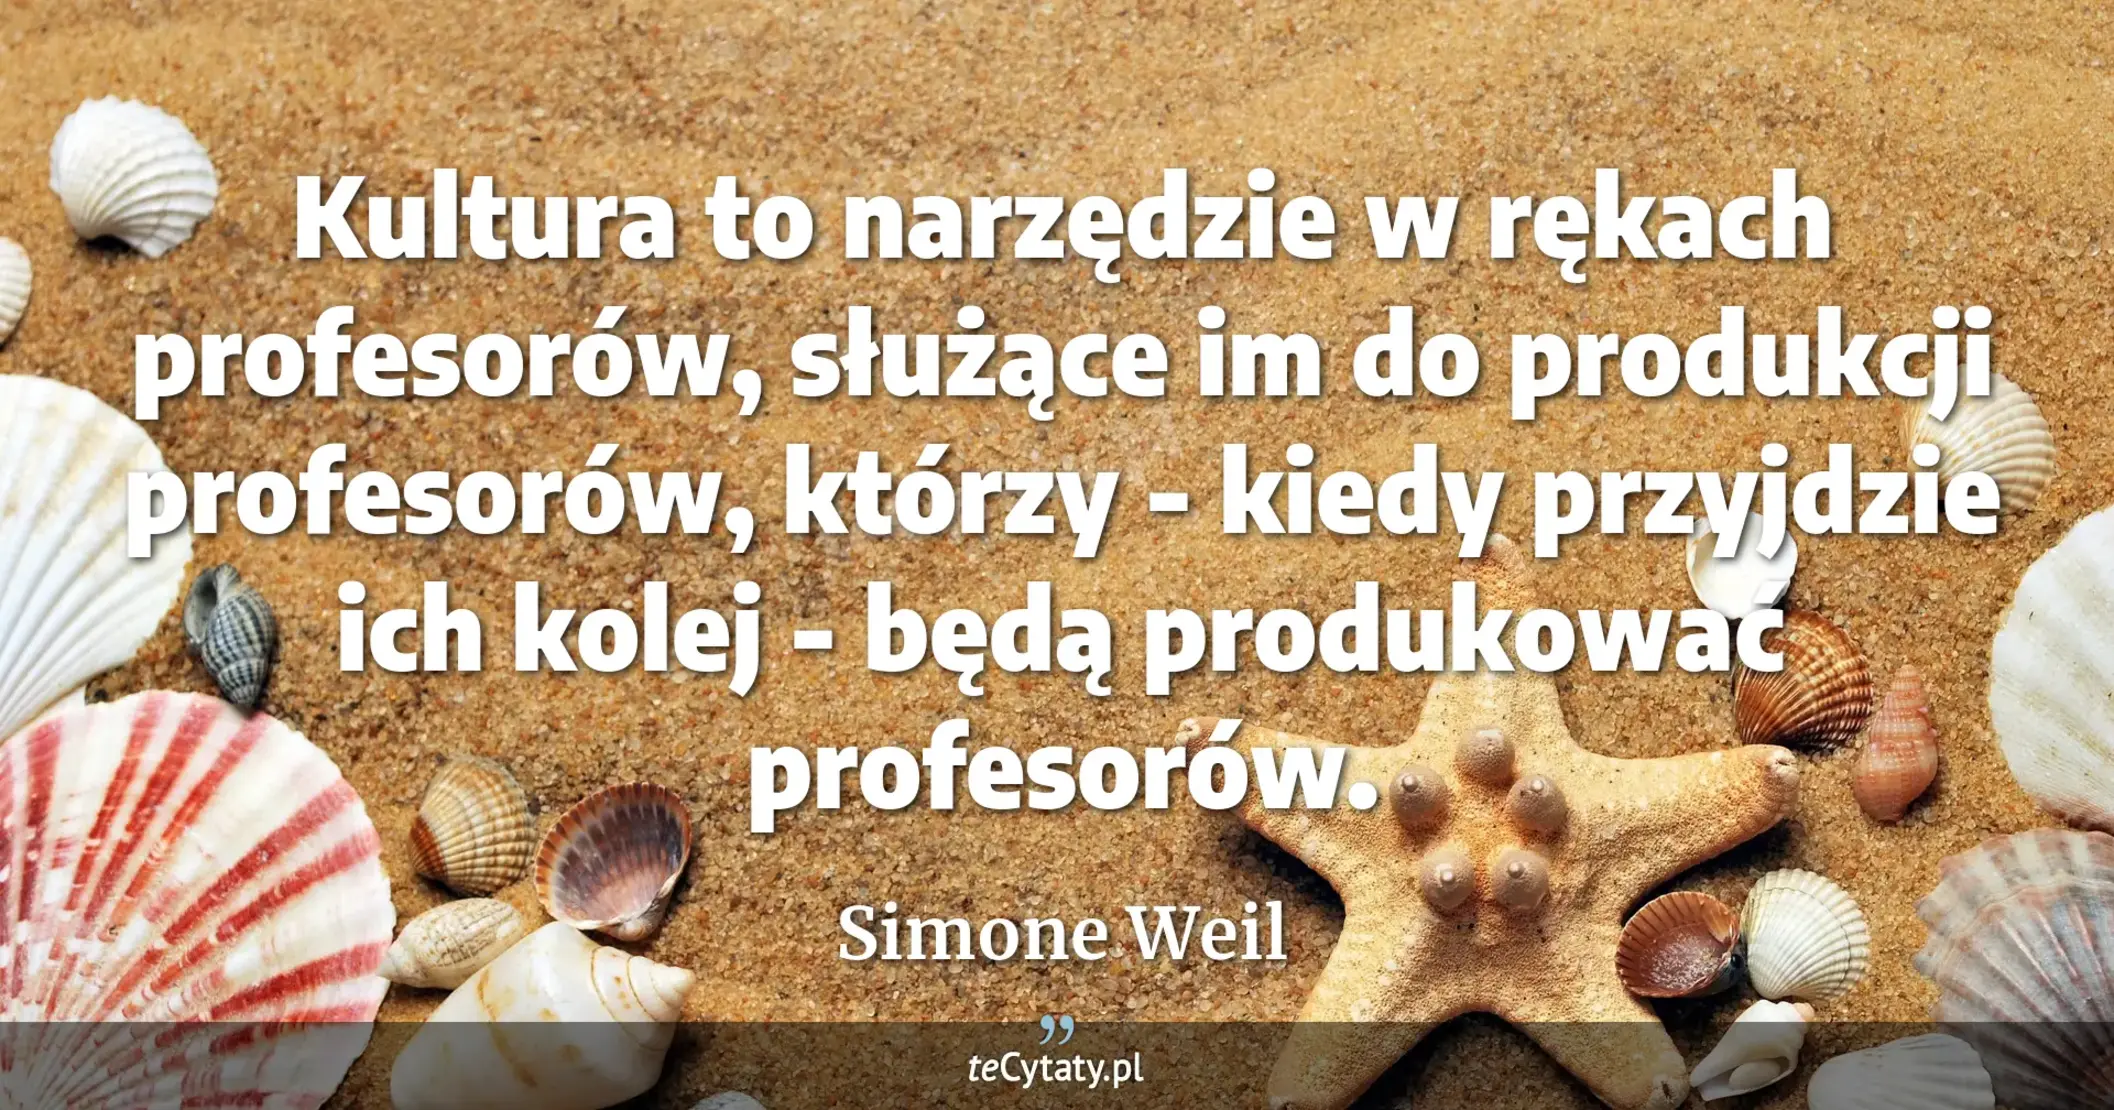 Kultura to narzędzie w rękach profesorów, służące im do produkcji profesorów, którzy - kiedy przyjdzie ich kolej - będą produkować profesorów. - Simone Weil